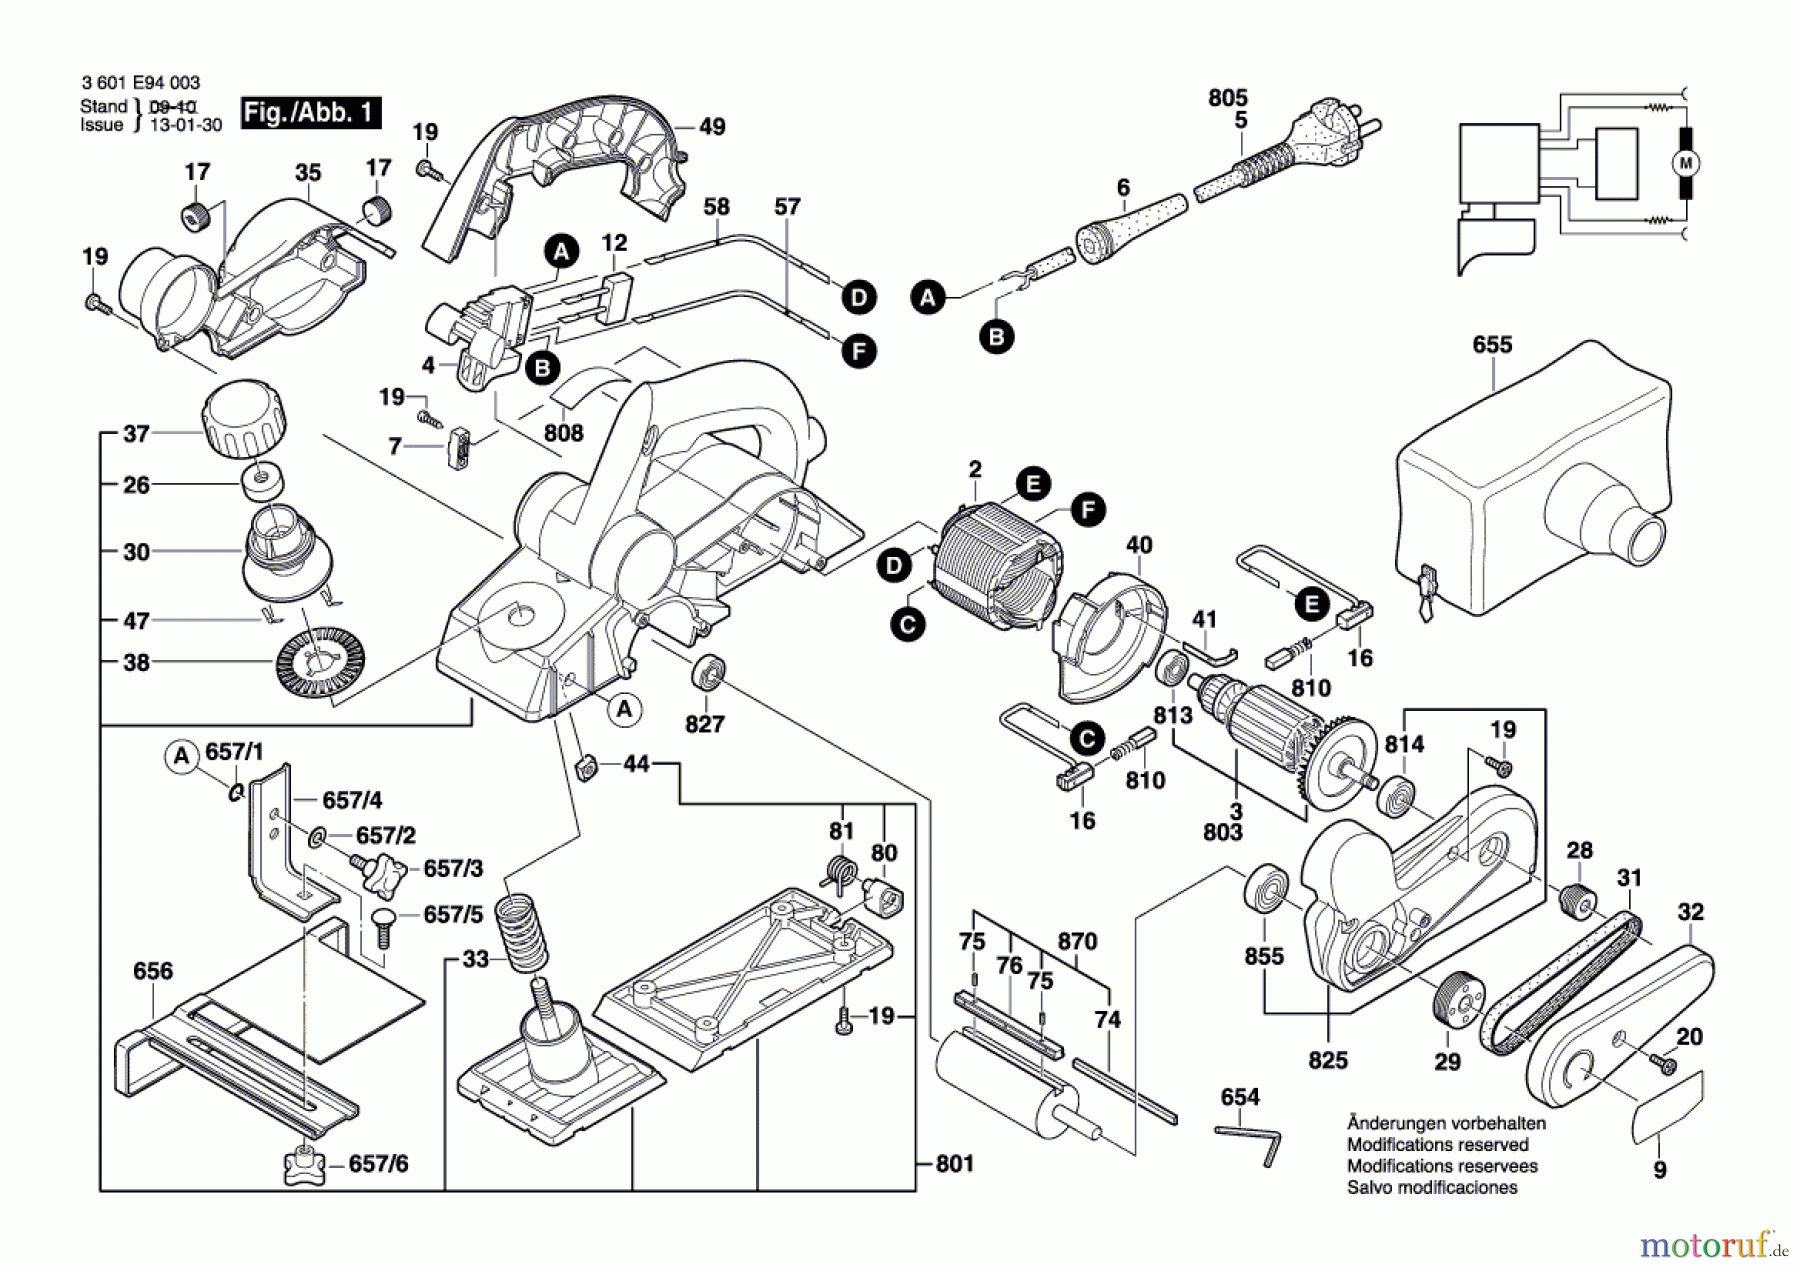  Bosch Werkzeug Handhobel GHO 15-82 Seite 1